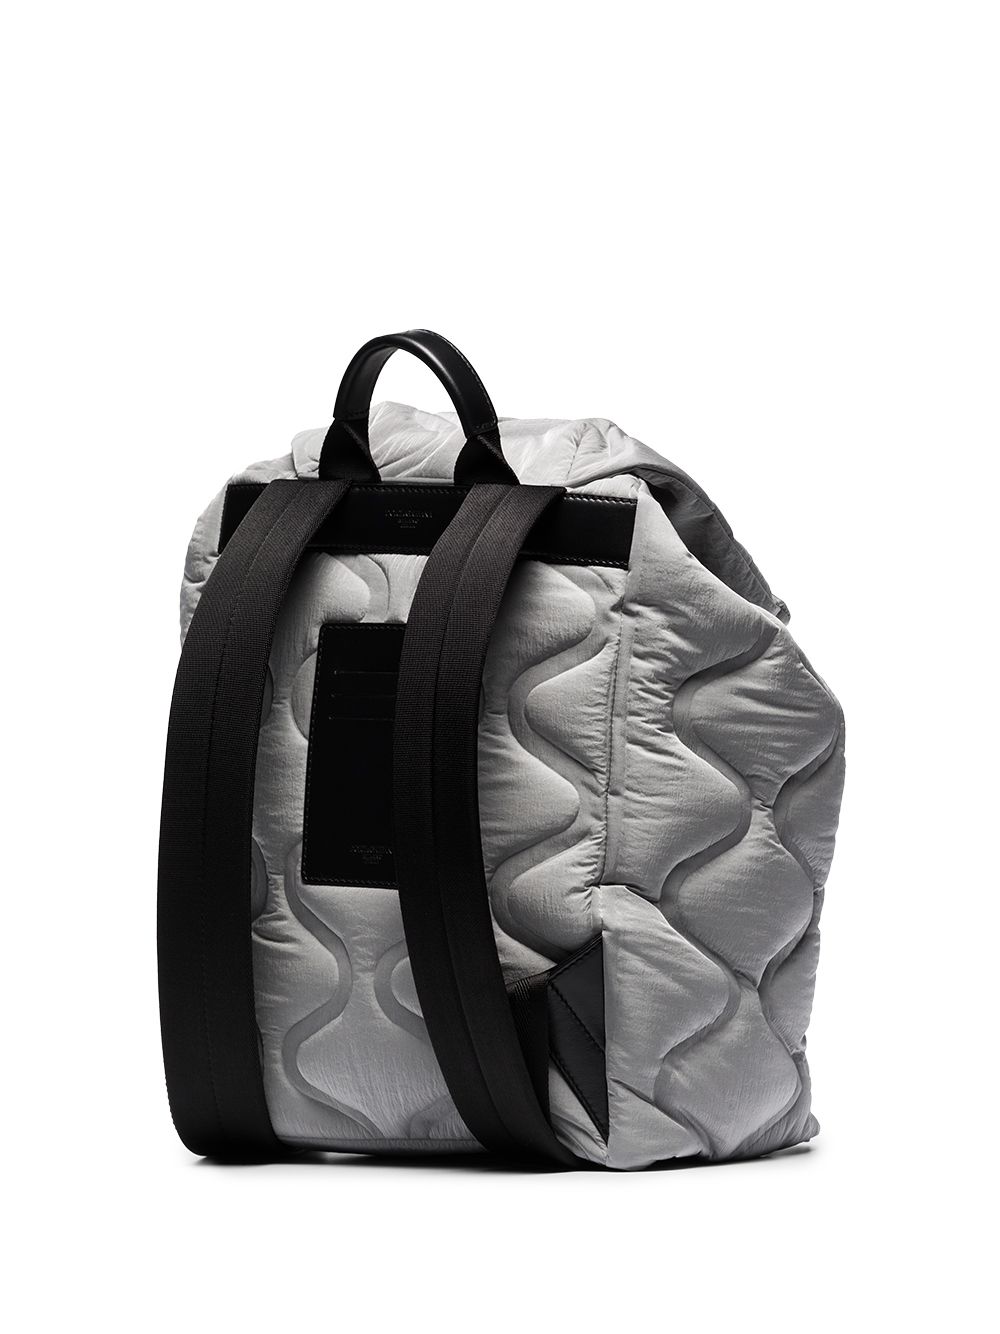 фото Dolce & gabbana стеганый рюкзак с логотипом